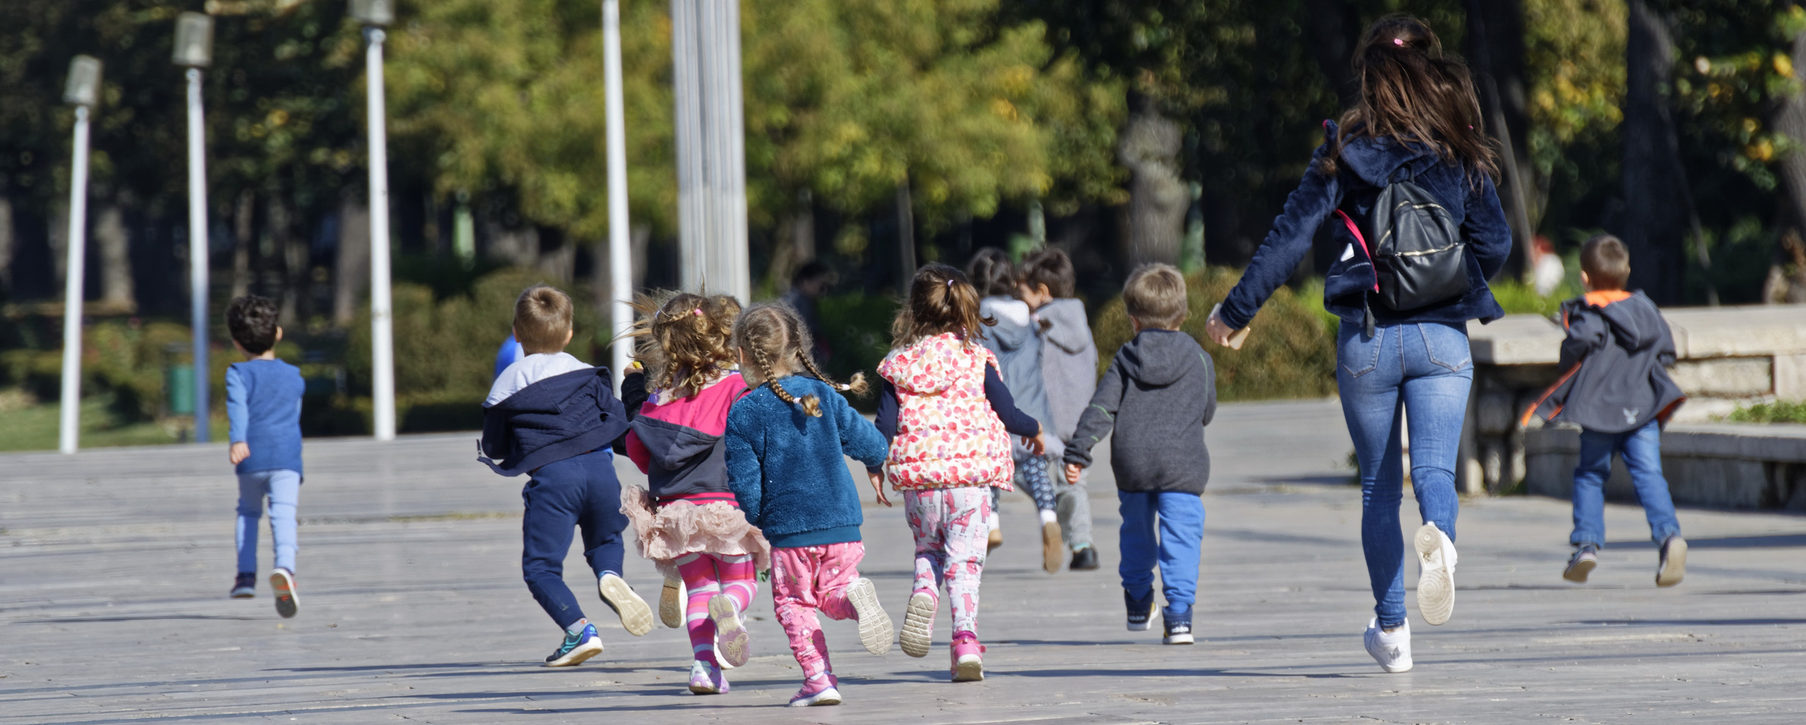 Kinder laufen auf einer Straße